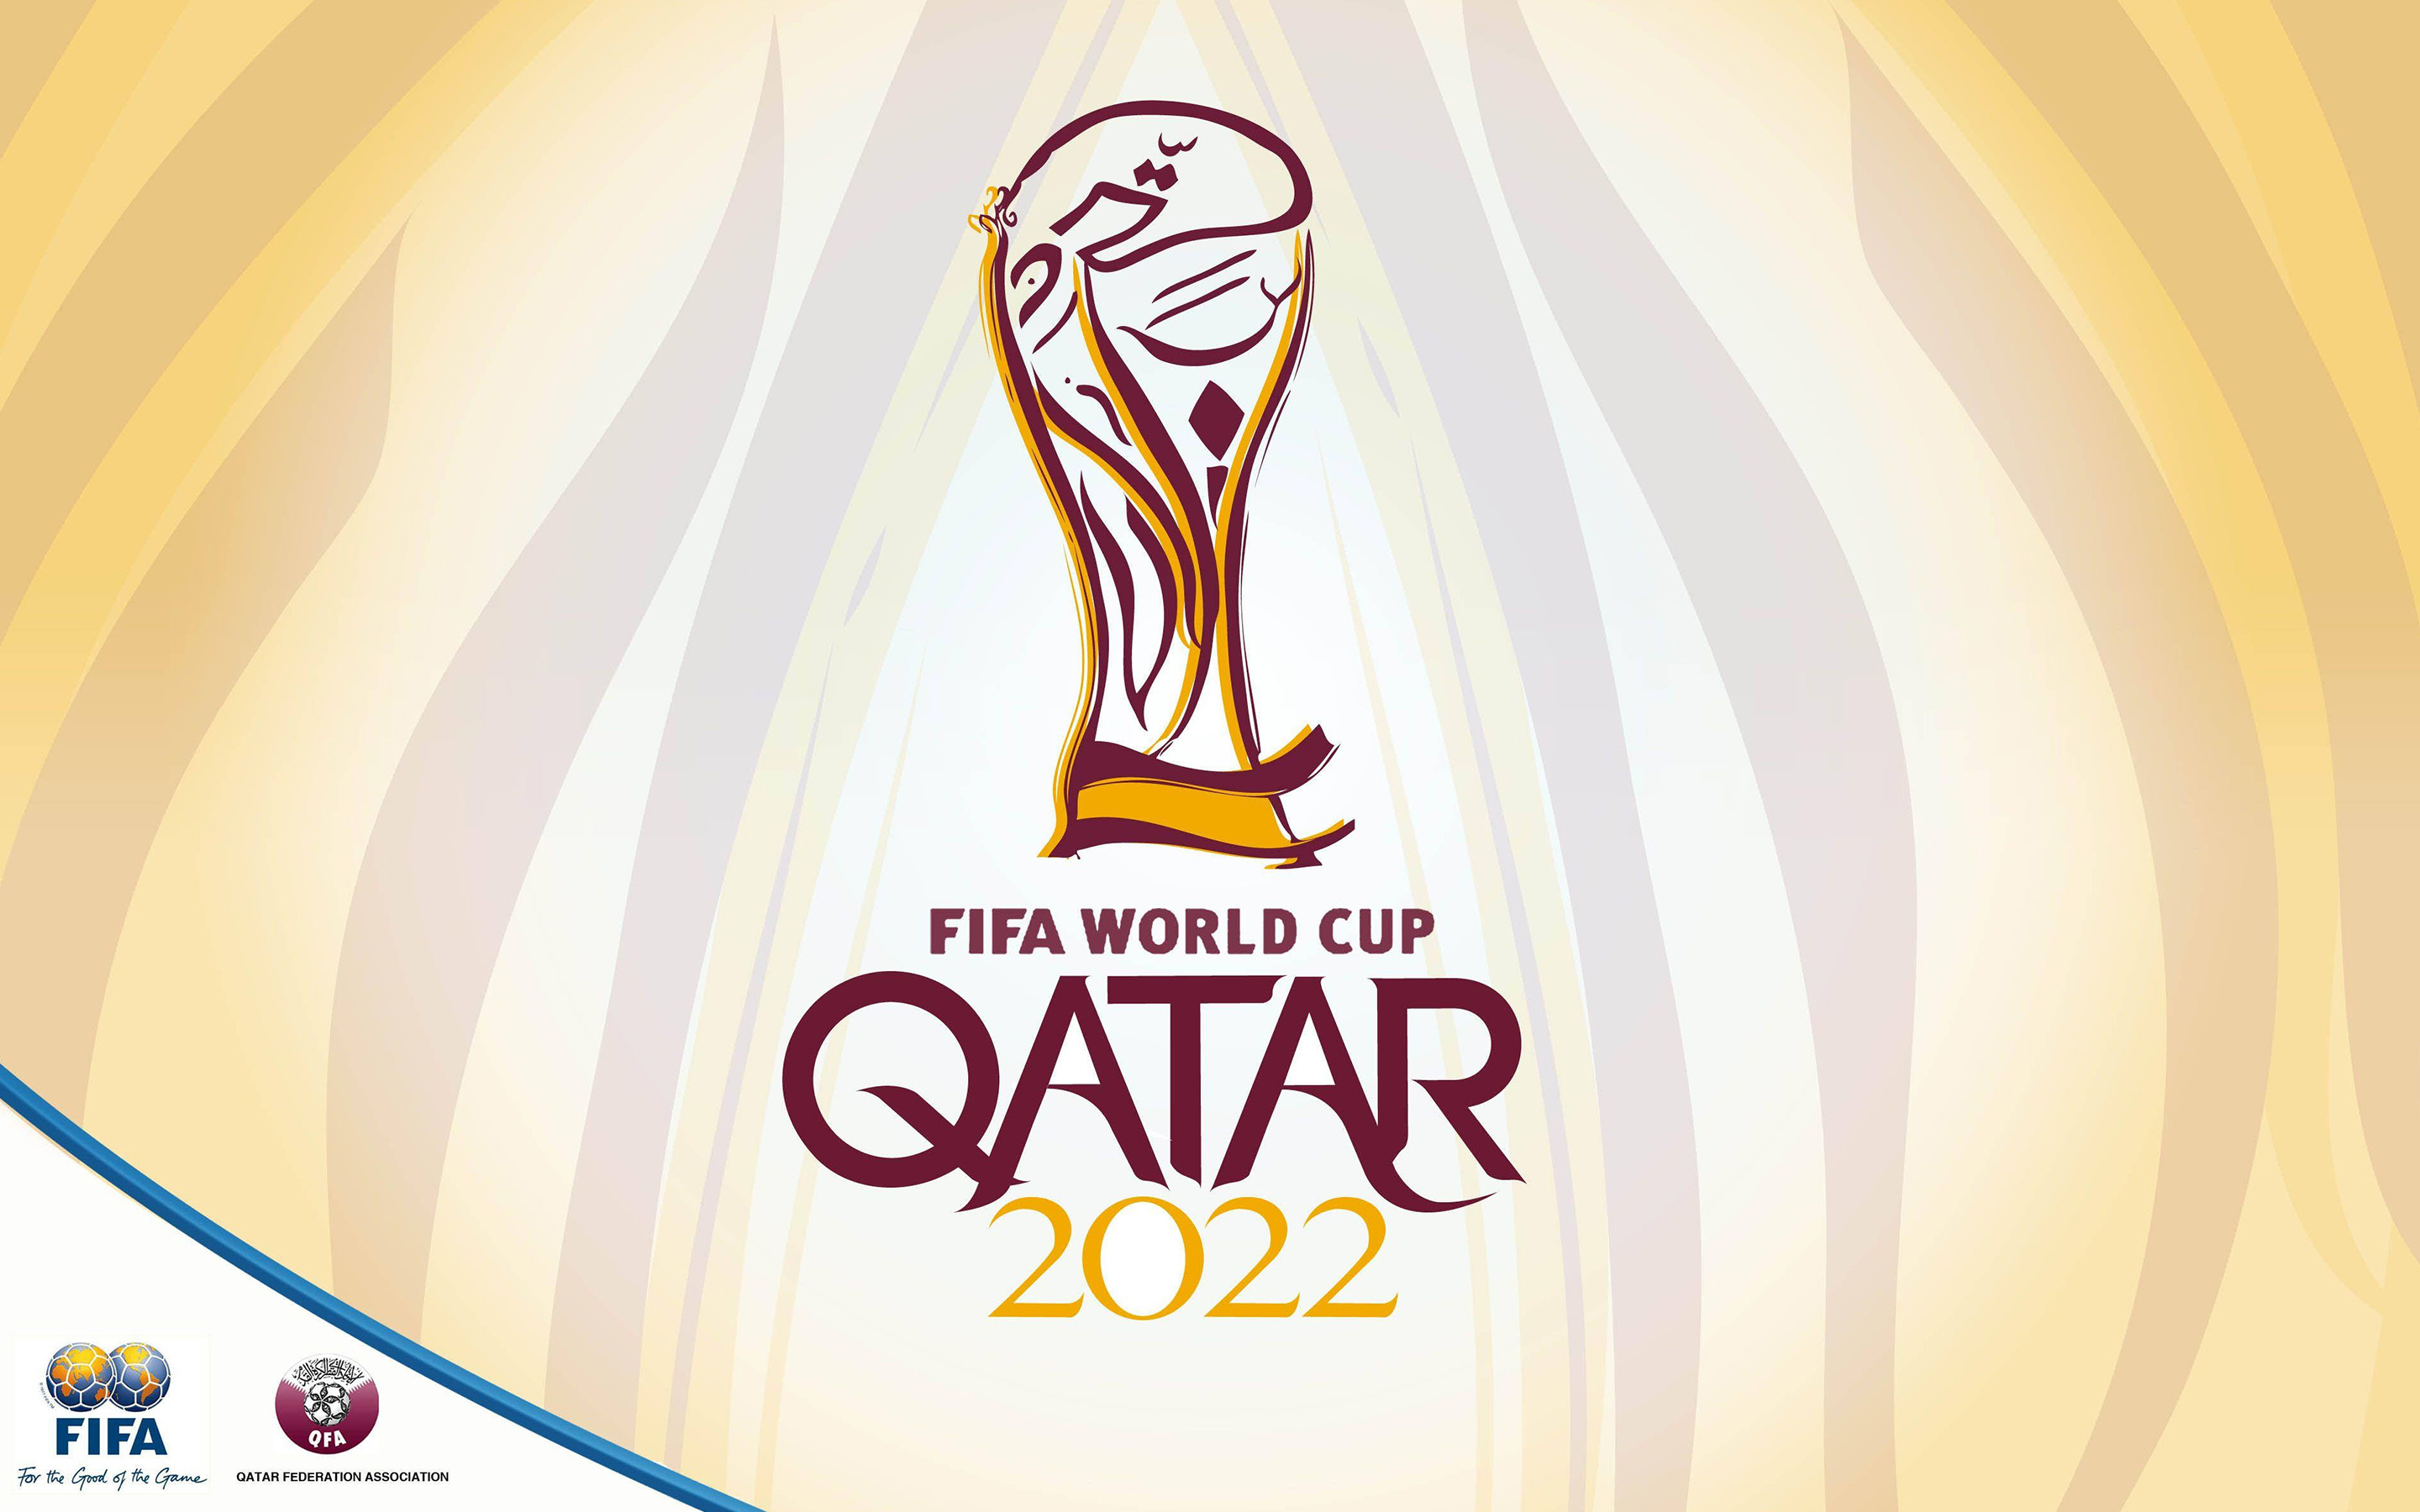 FIFA World Cup Qatar 2022 009 Mistrzostwa Swiata w Pilce Noznej Katar 2022, Logo